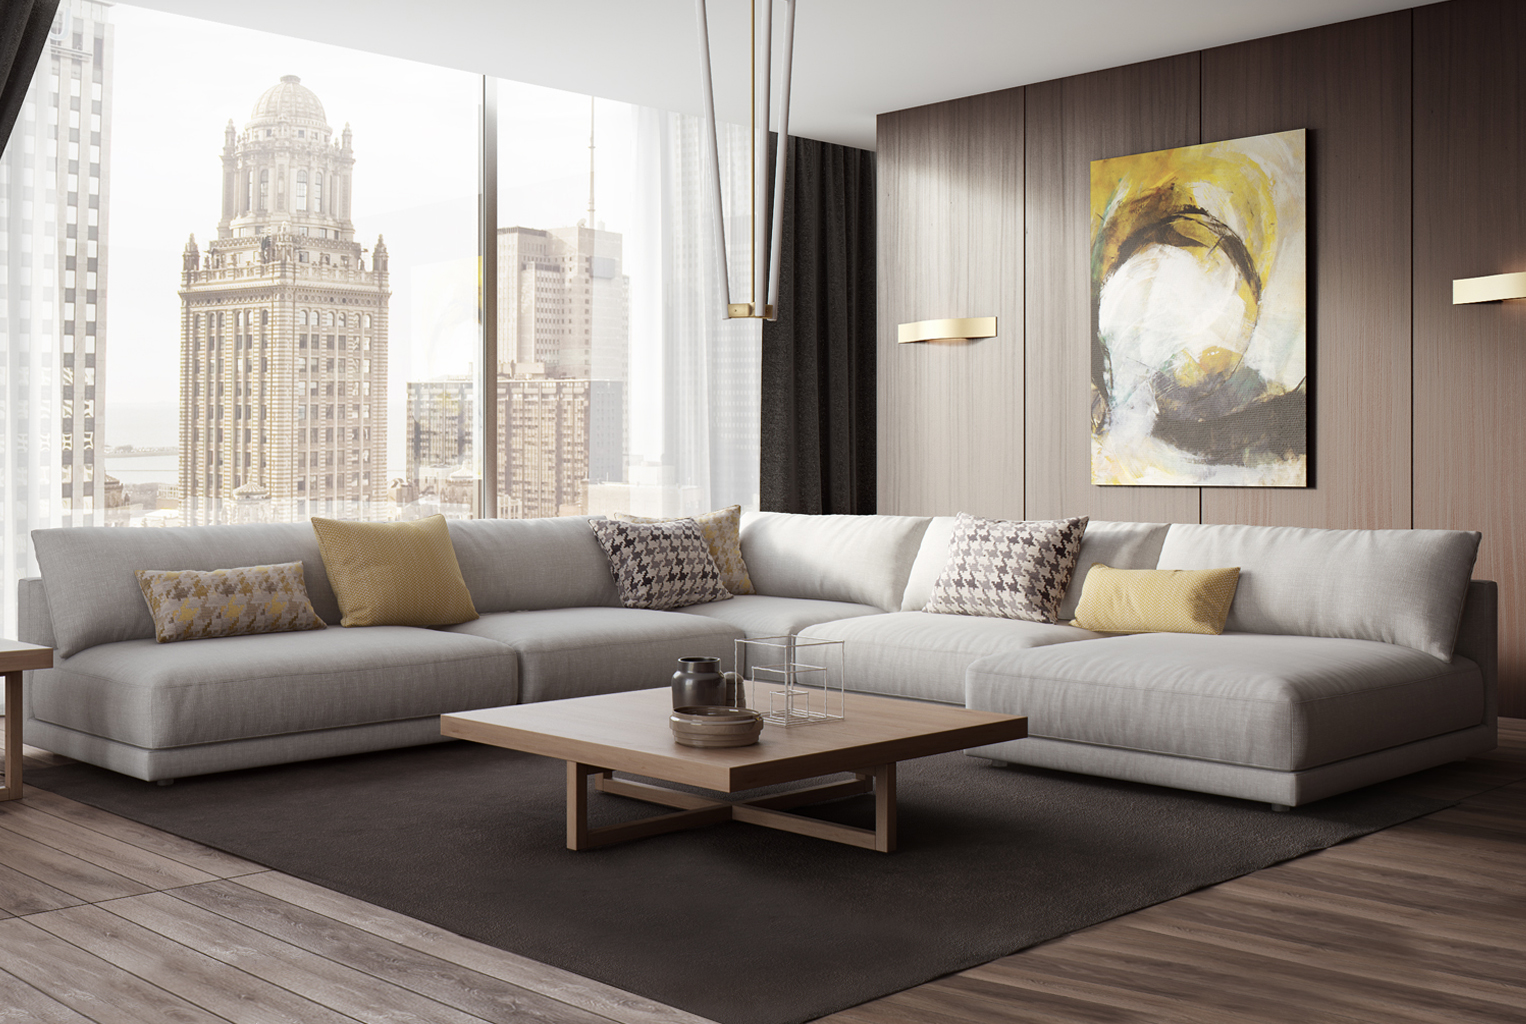 Как выбрать идеальный офисный диван?